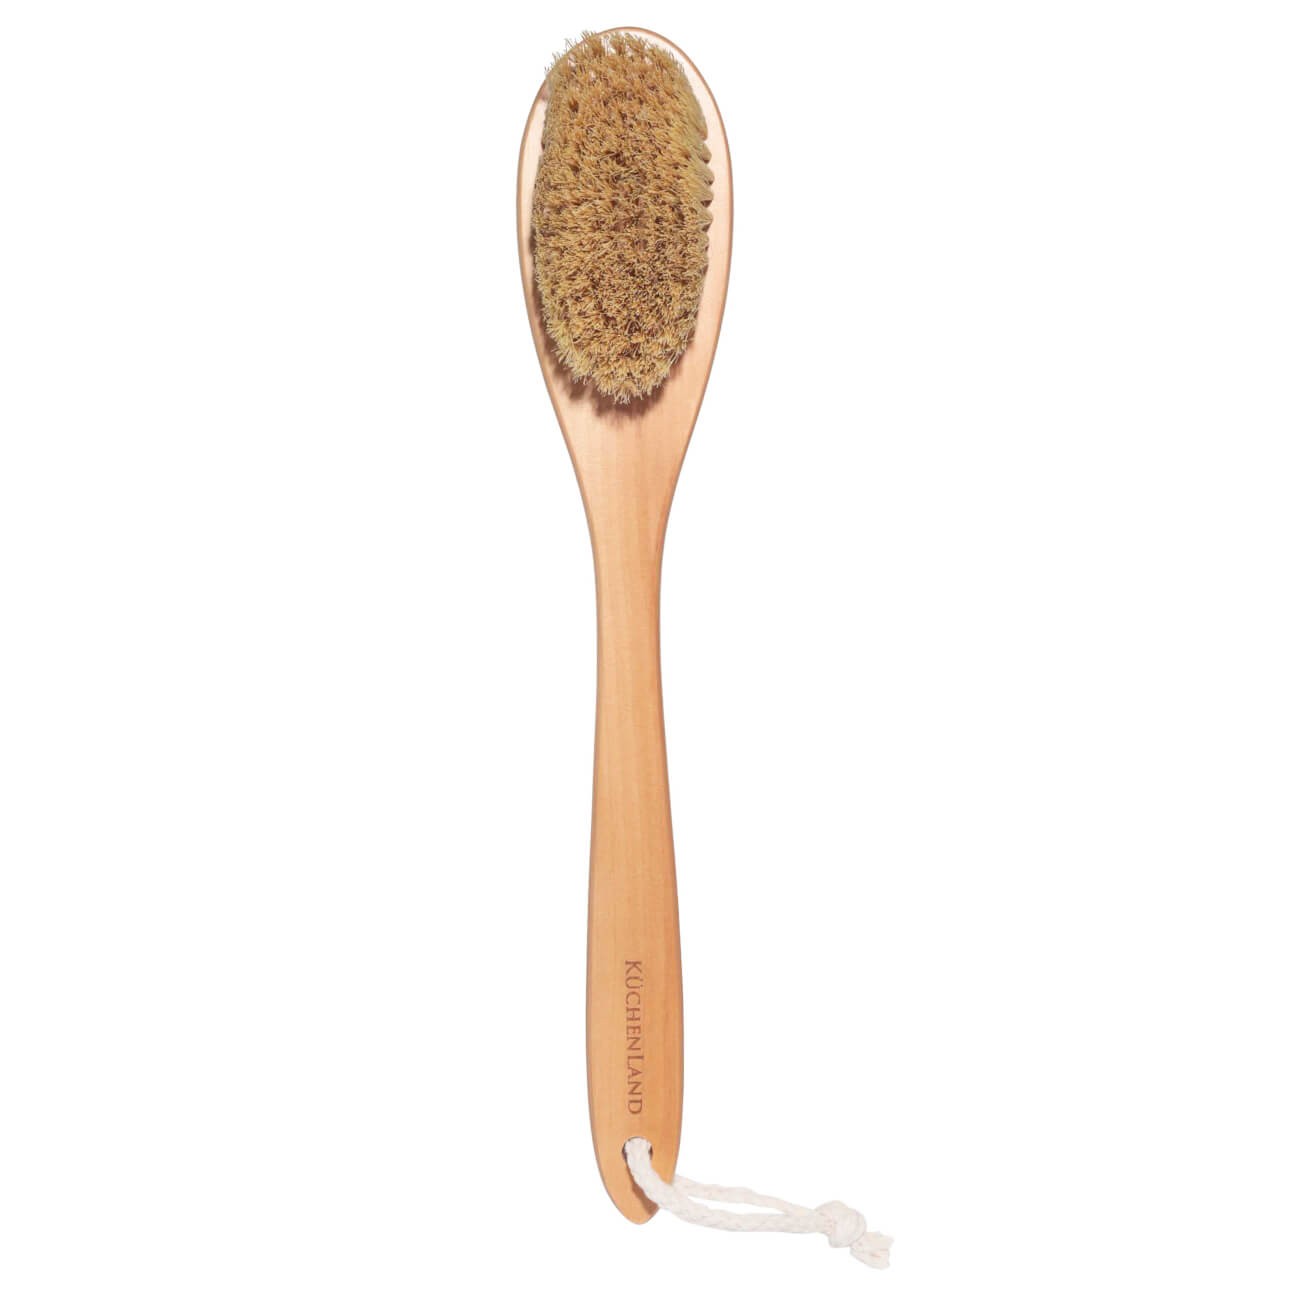 Щетка для сухого массажа, 38 см, дерево/растительное волокно, Bamboo spa щетка для сухого массажа lei натуральная щетина